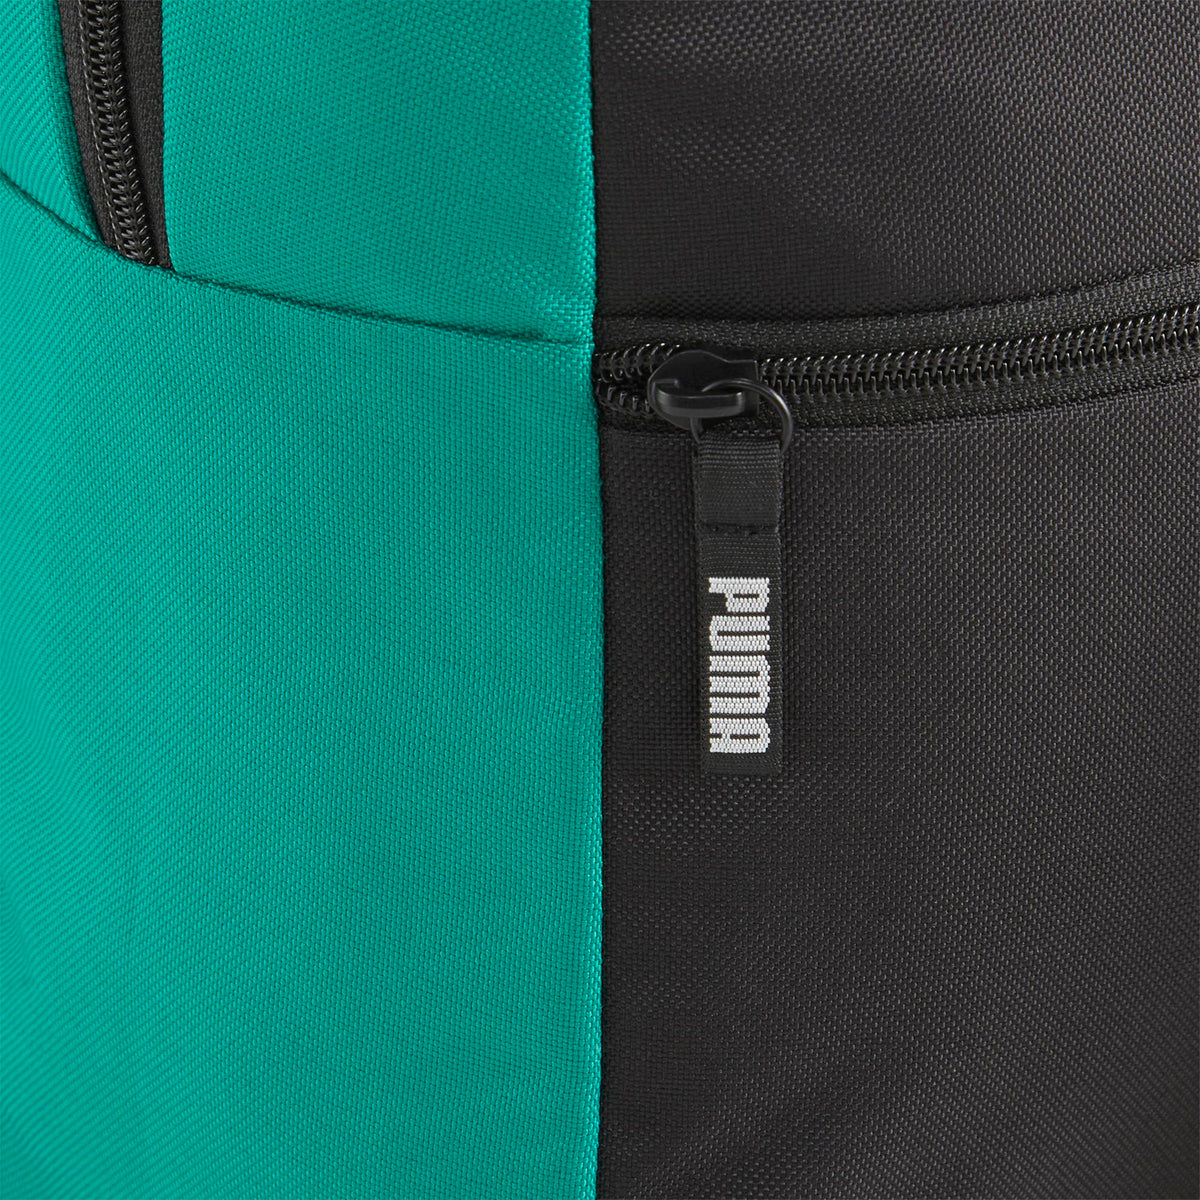 PUMA Backpack Green/Black